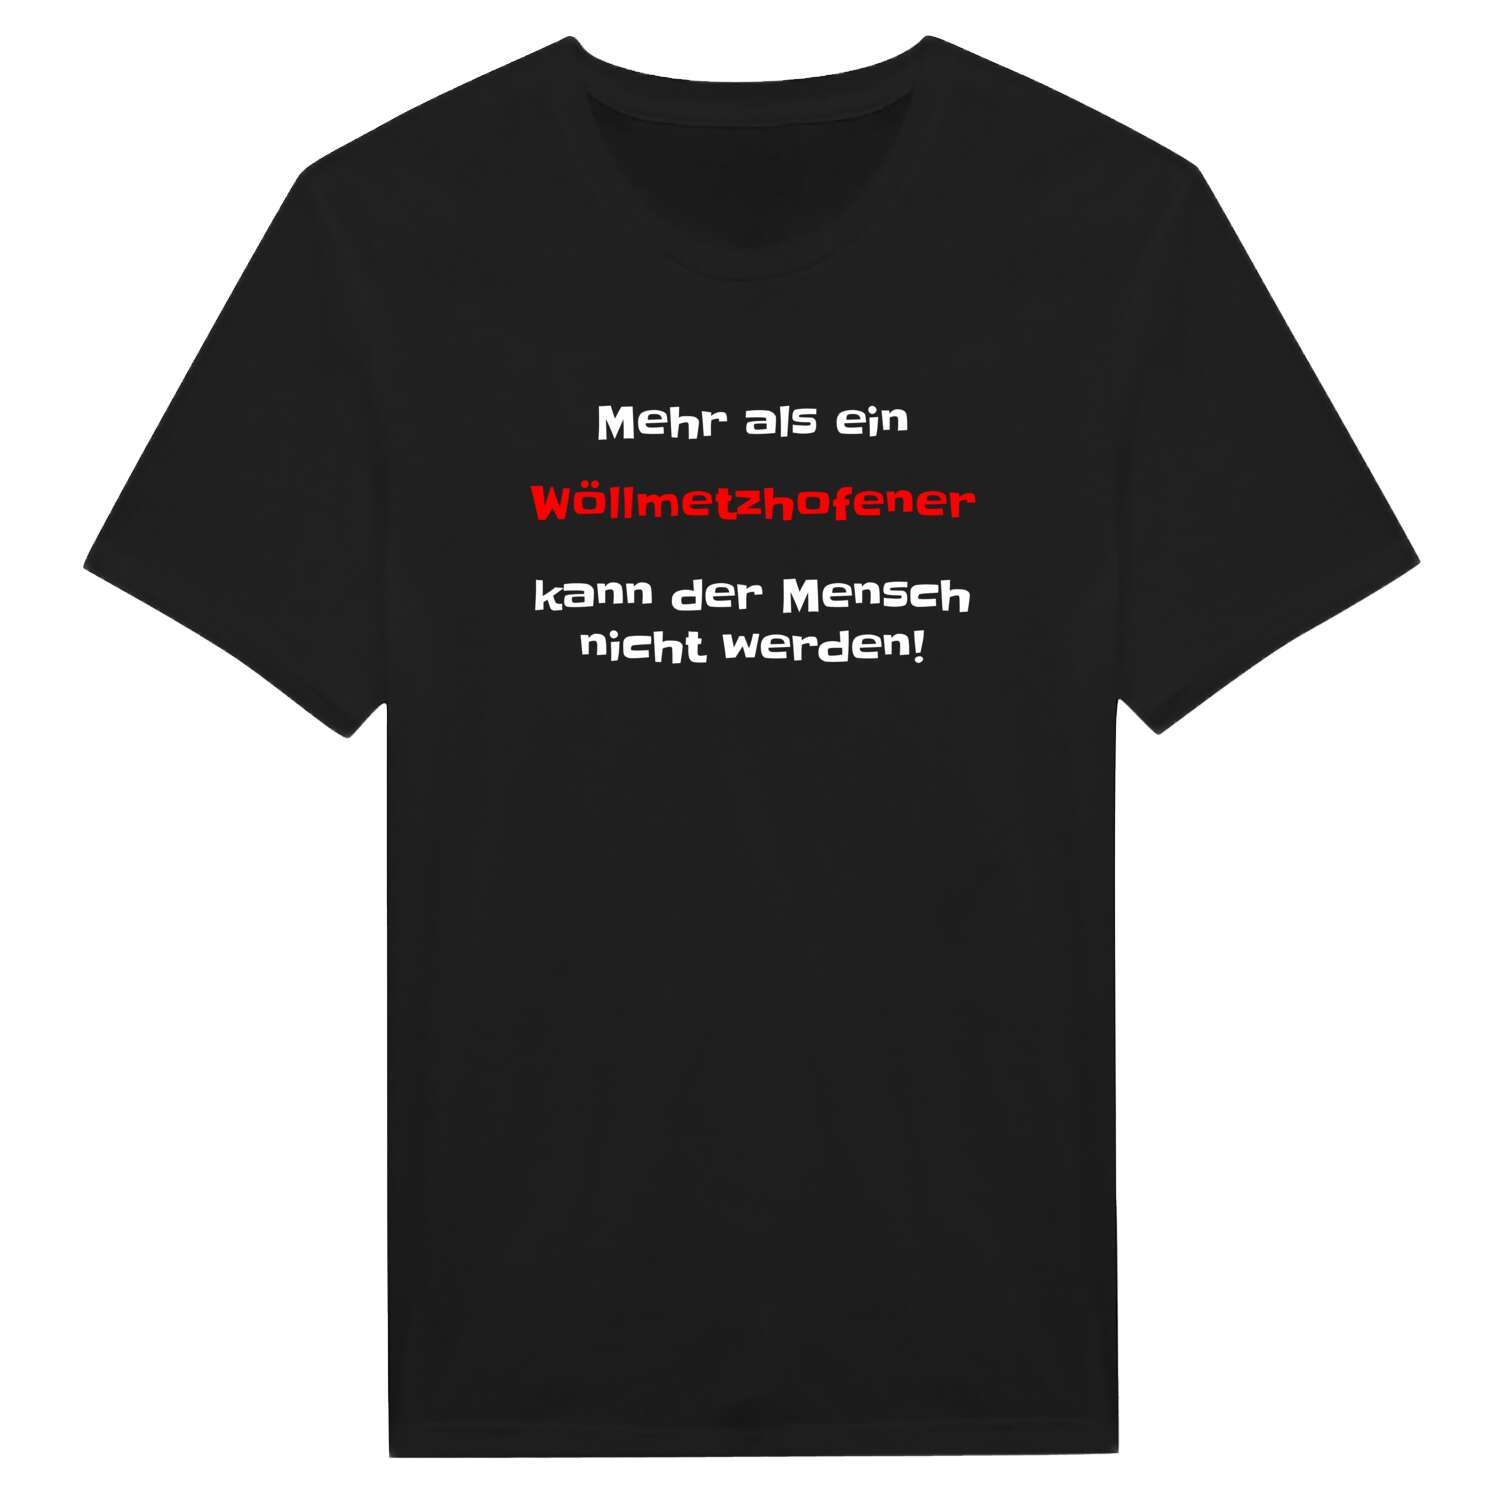 Wöllmetzhofen T-Shirt »Mehr als ein«